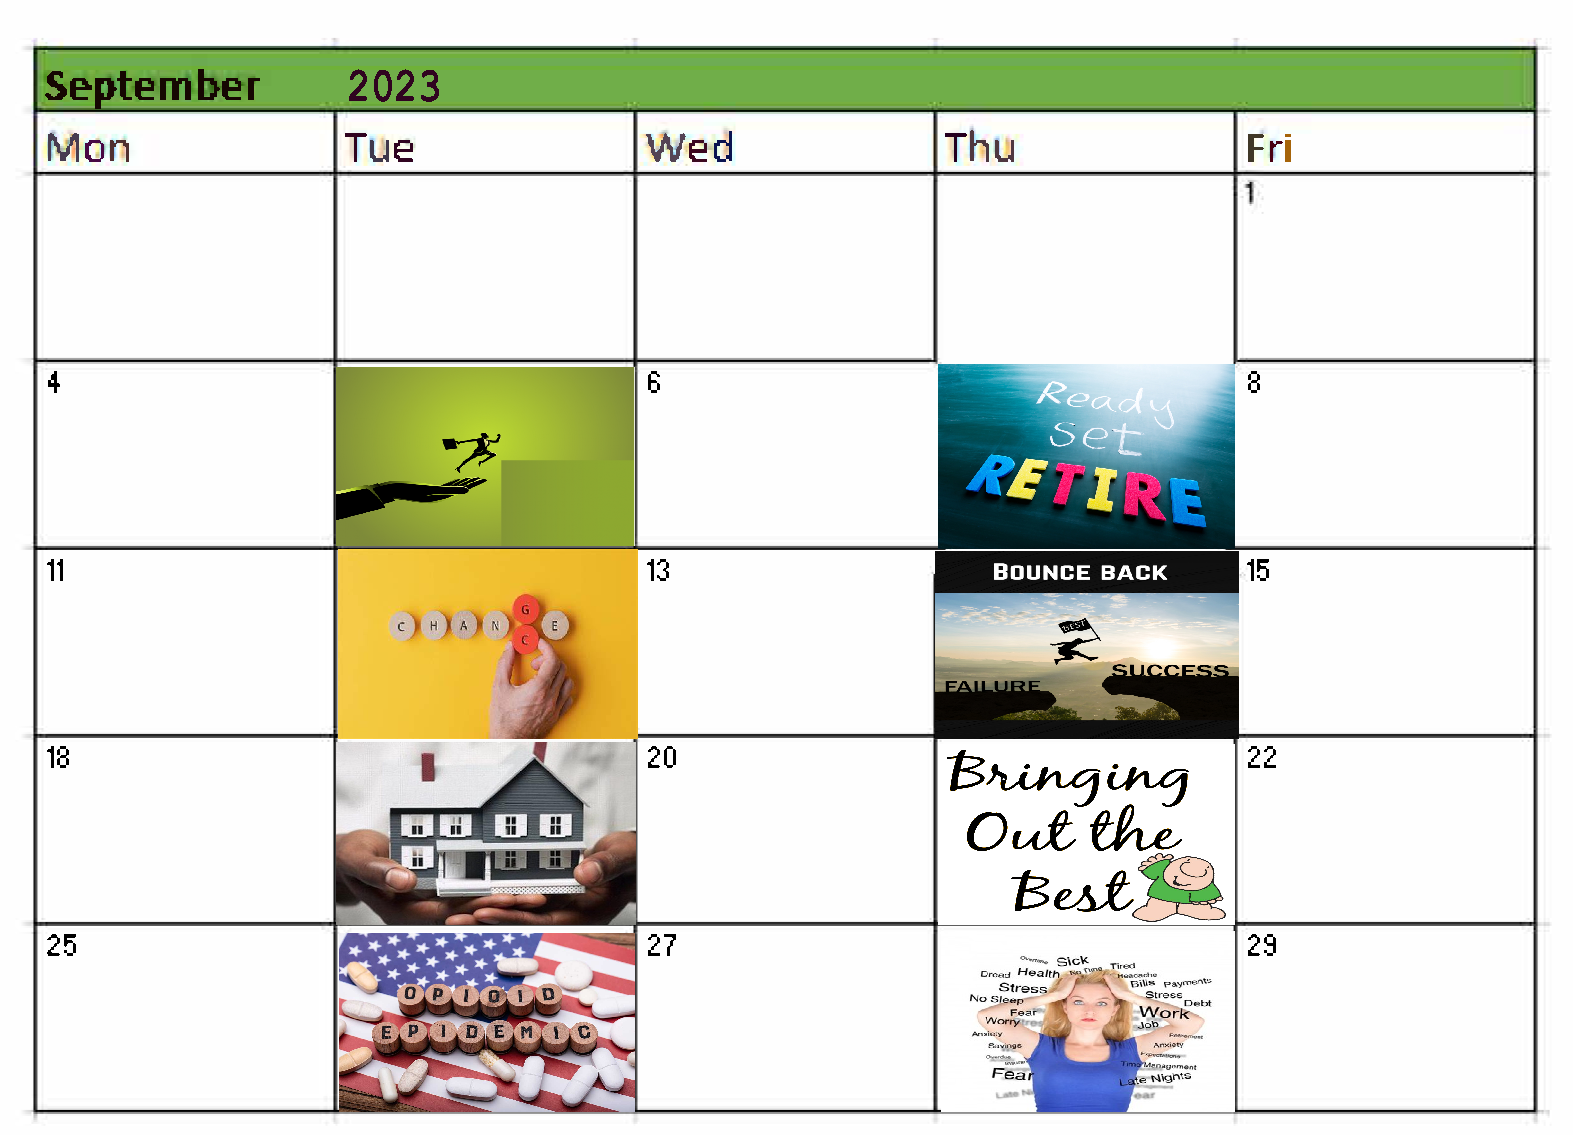 HR Meeting Calendar